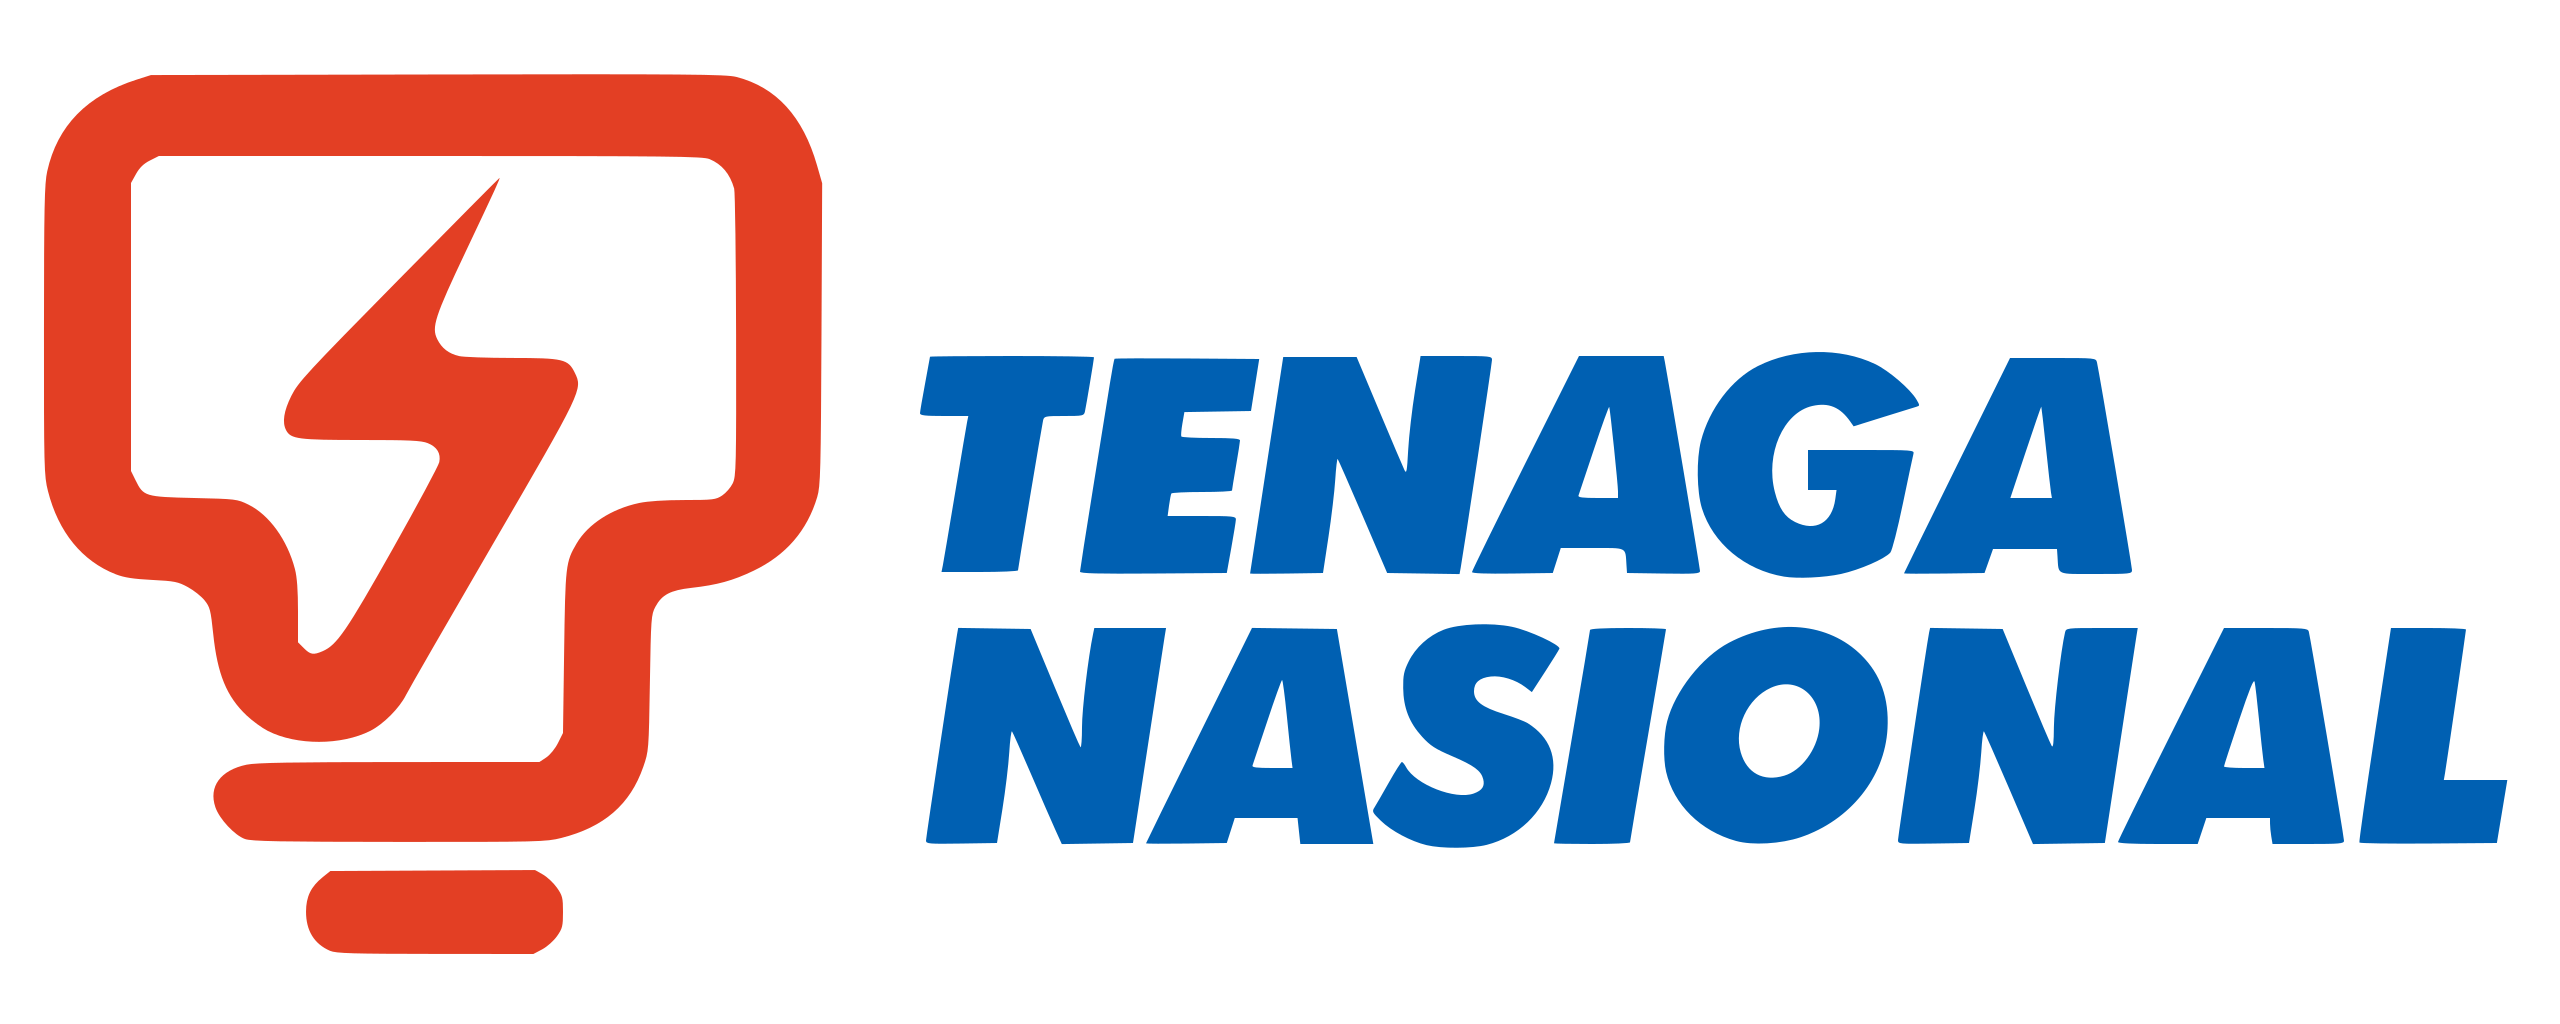 Tenaga_Nasional